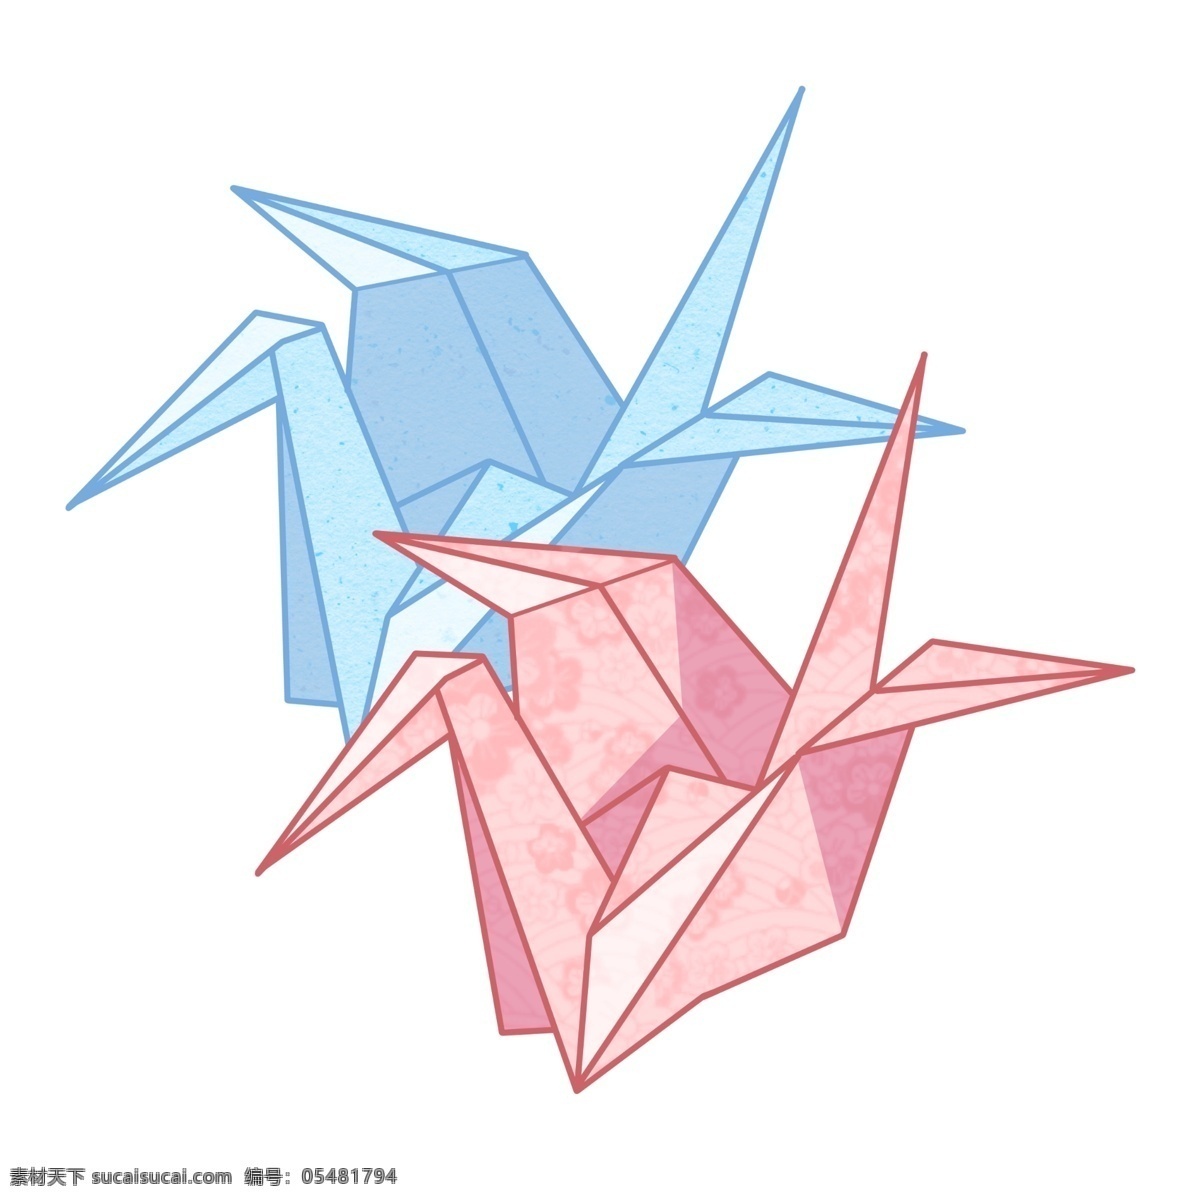 日本 手工 折纸 纸鹤 鸟 日本纸鹤 传统 装饰 彩色折纸纸鹤 情感 千纸鹤 手工折纸纸鹤